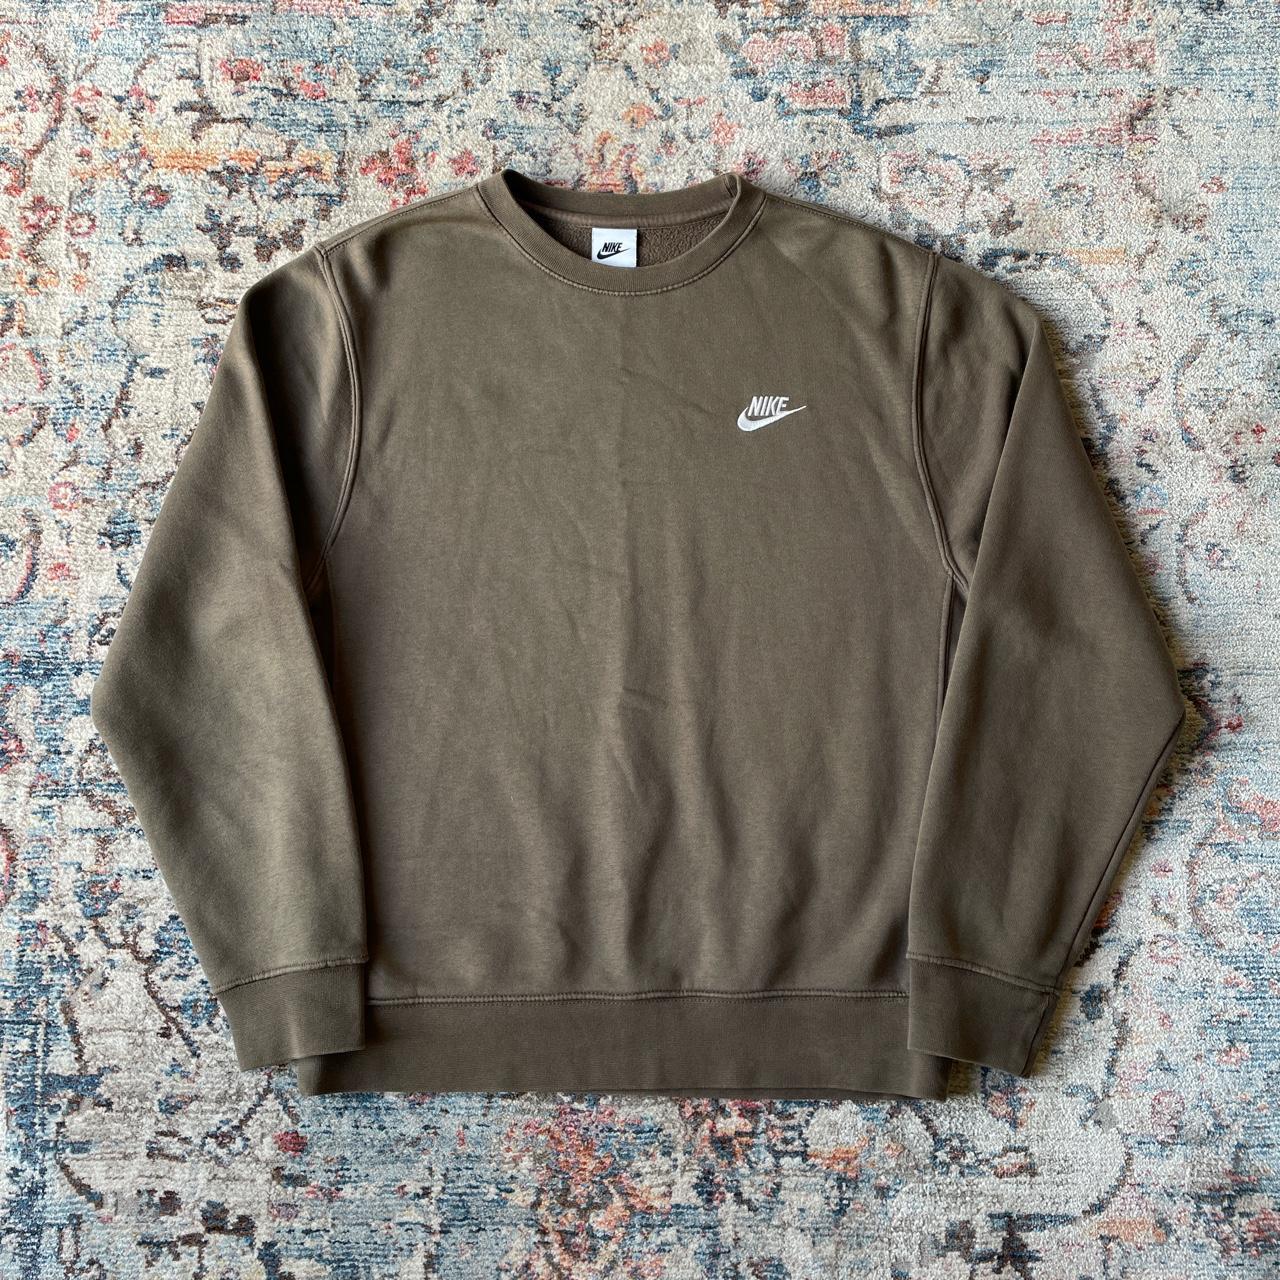 Nike Brown Sweatshirt